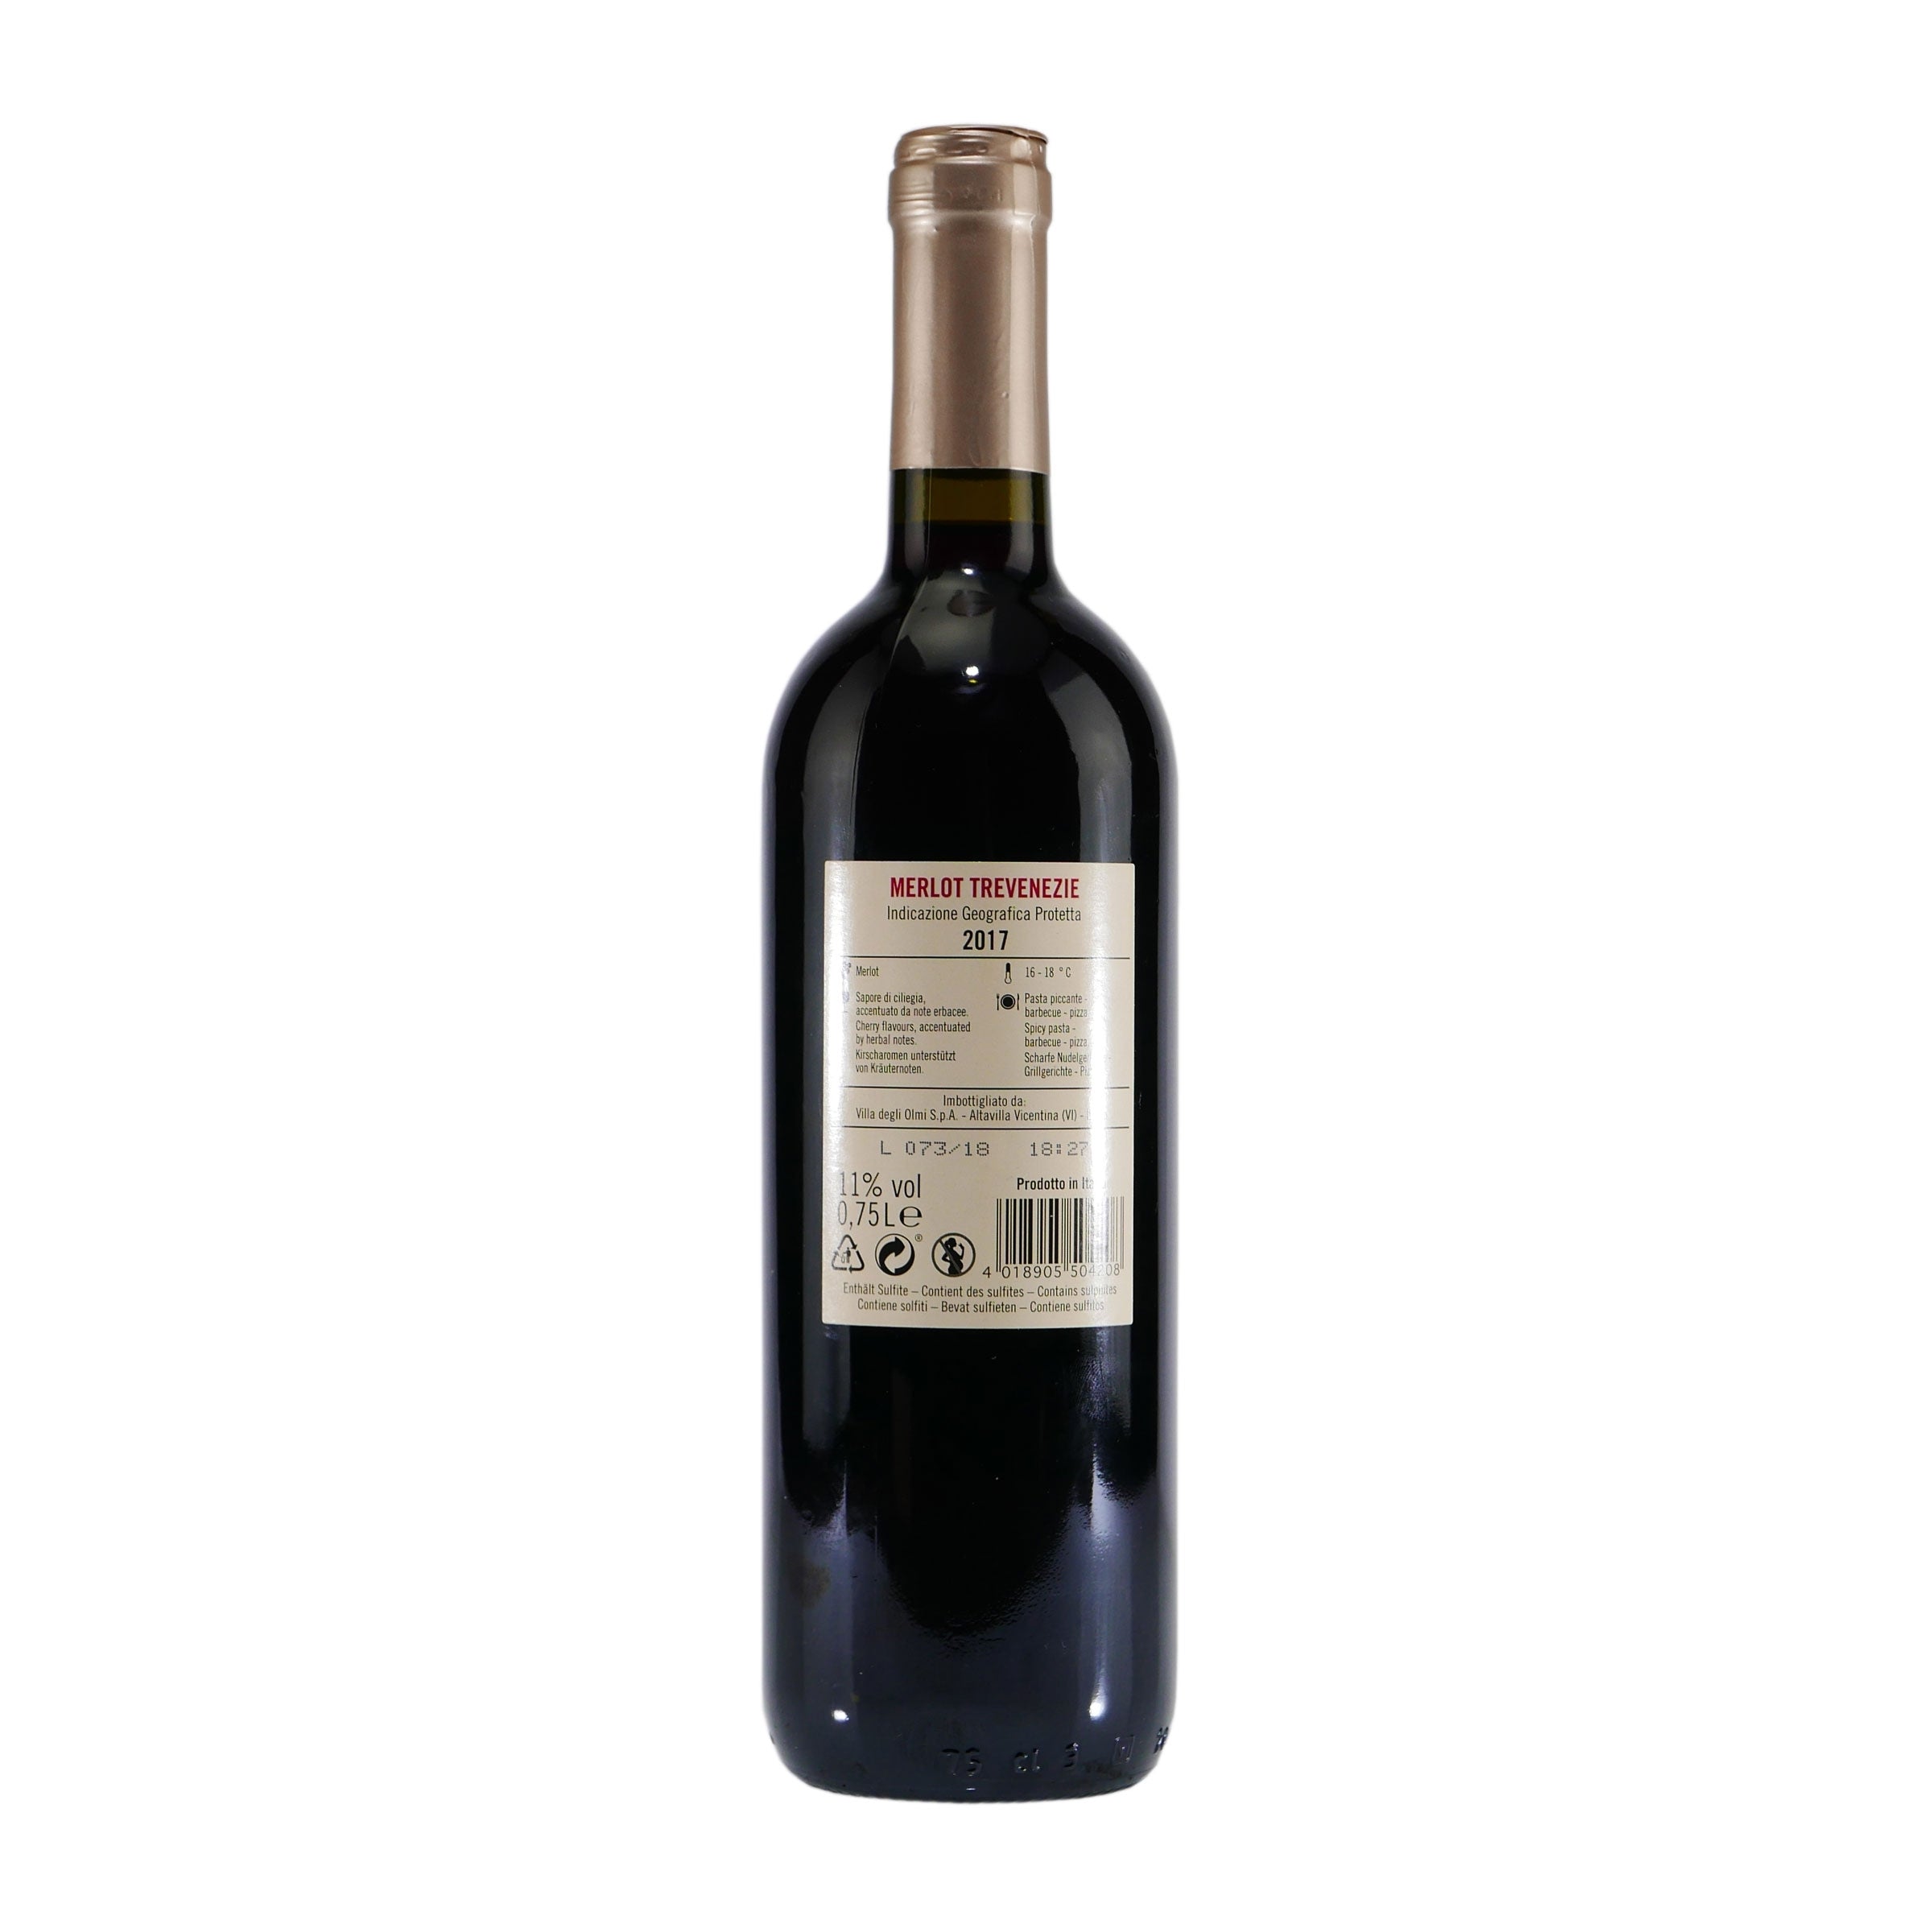 Valmarone Merlot IGP Italienischer Rotwein (6 x 0,75L)